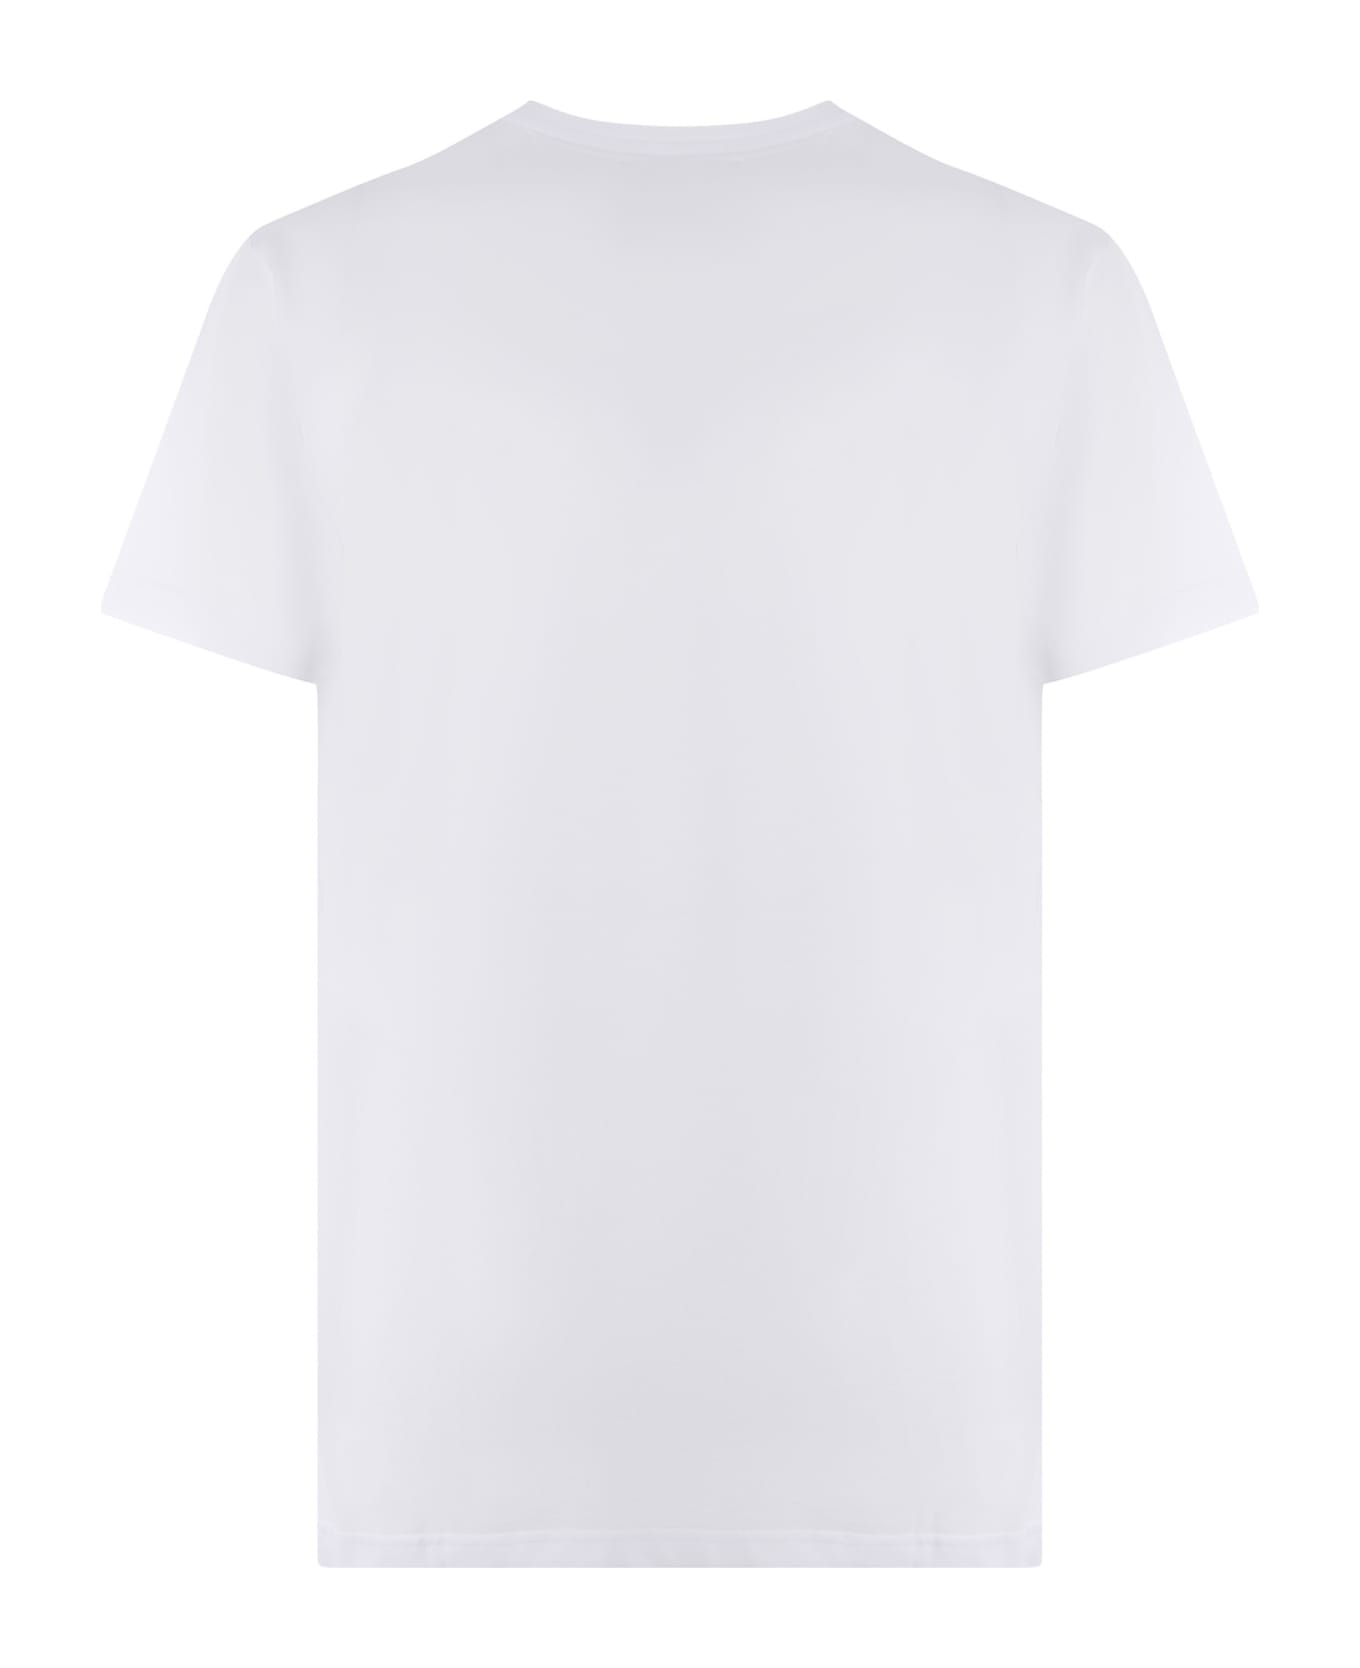 Giuseppe Zanotti T-shirt Giuseppe Zanotti Made Of Cotton - Bianco